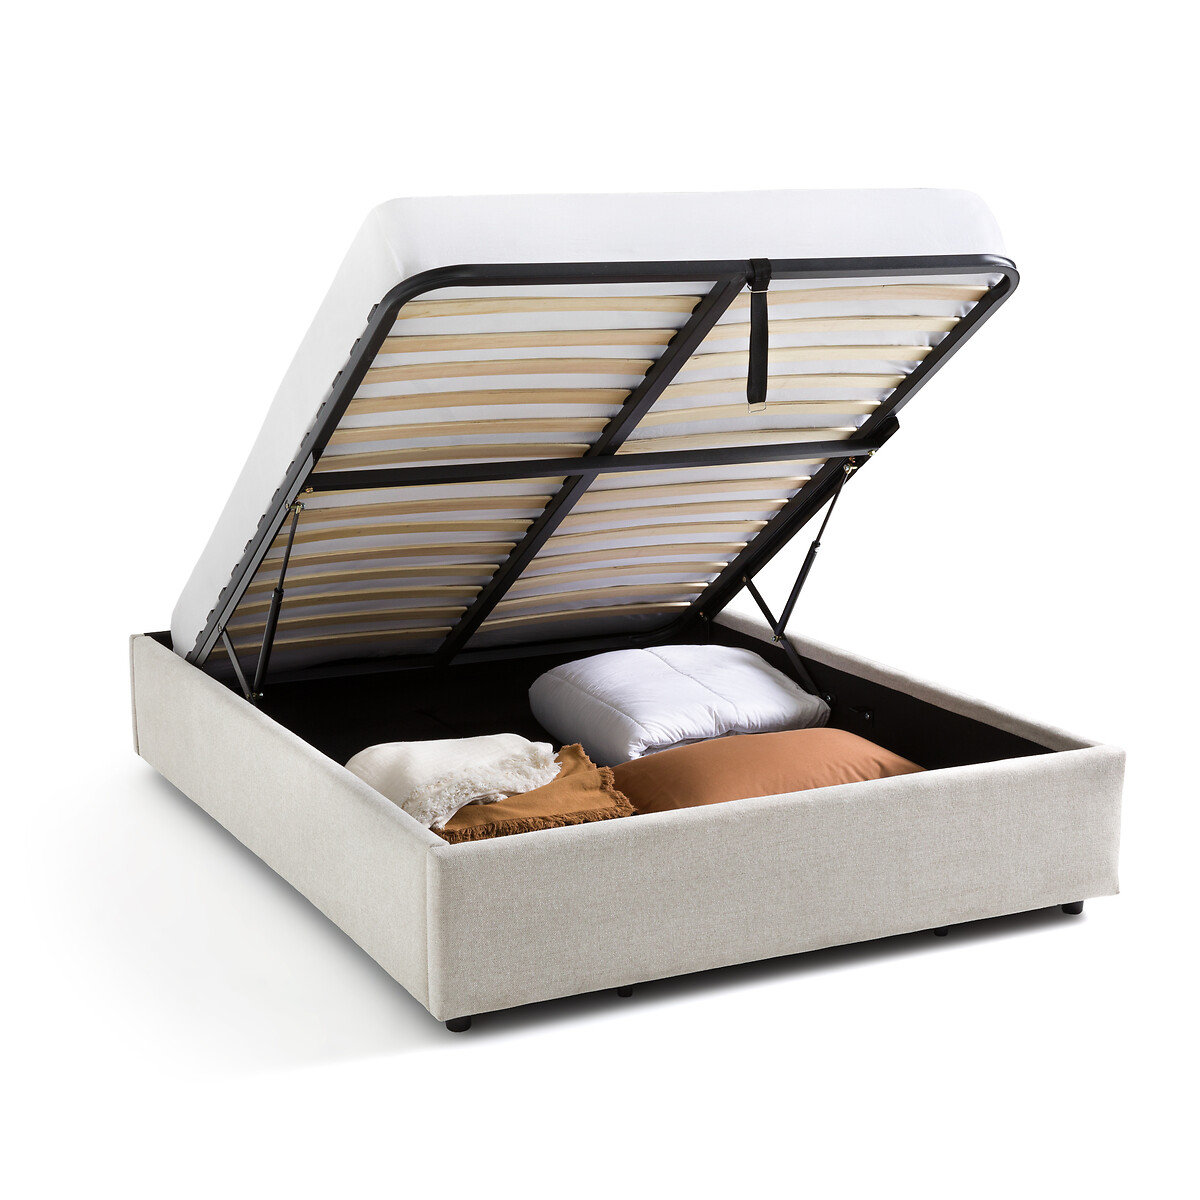 Кровать С реечным дном и ящиком внутри Papilla 140 x 190 см бежевый LaRedoute, размер 140 x 190 см - фото 3